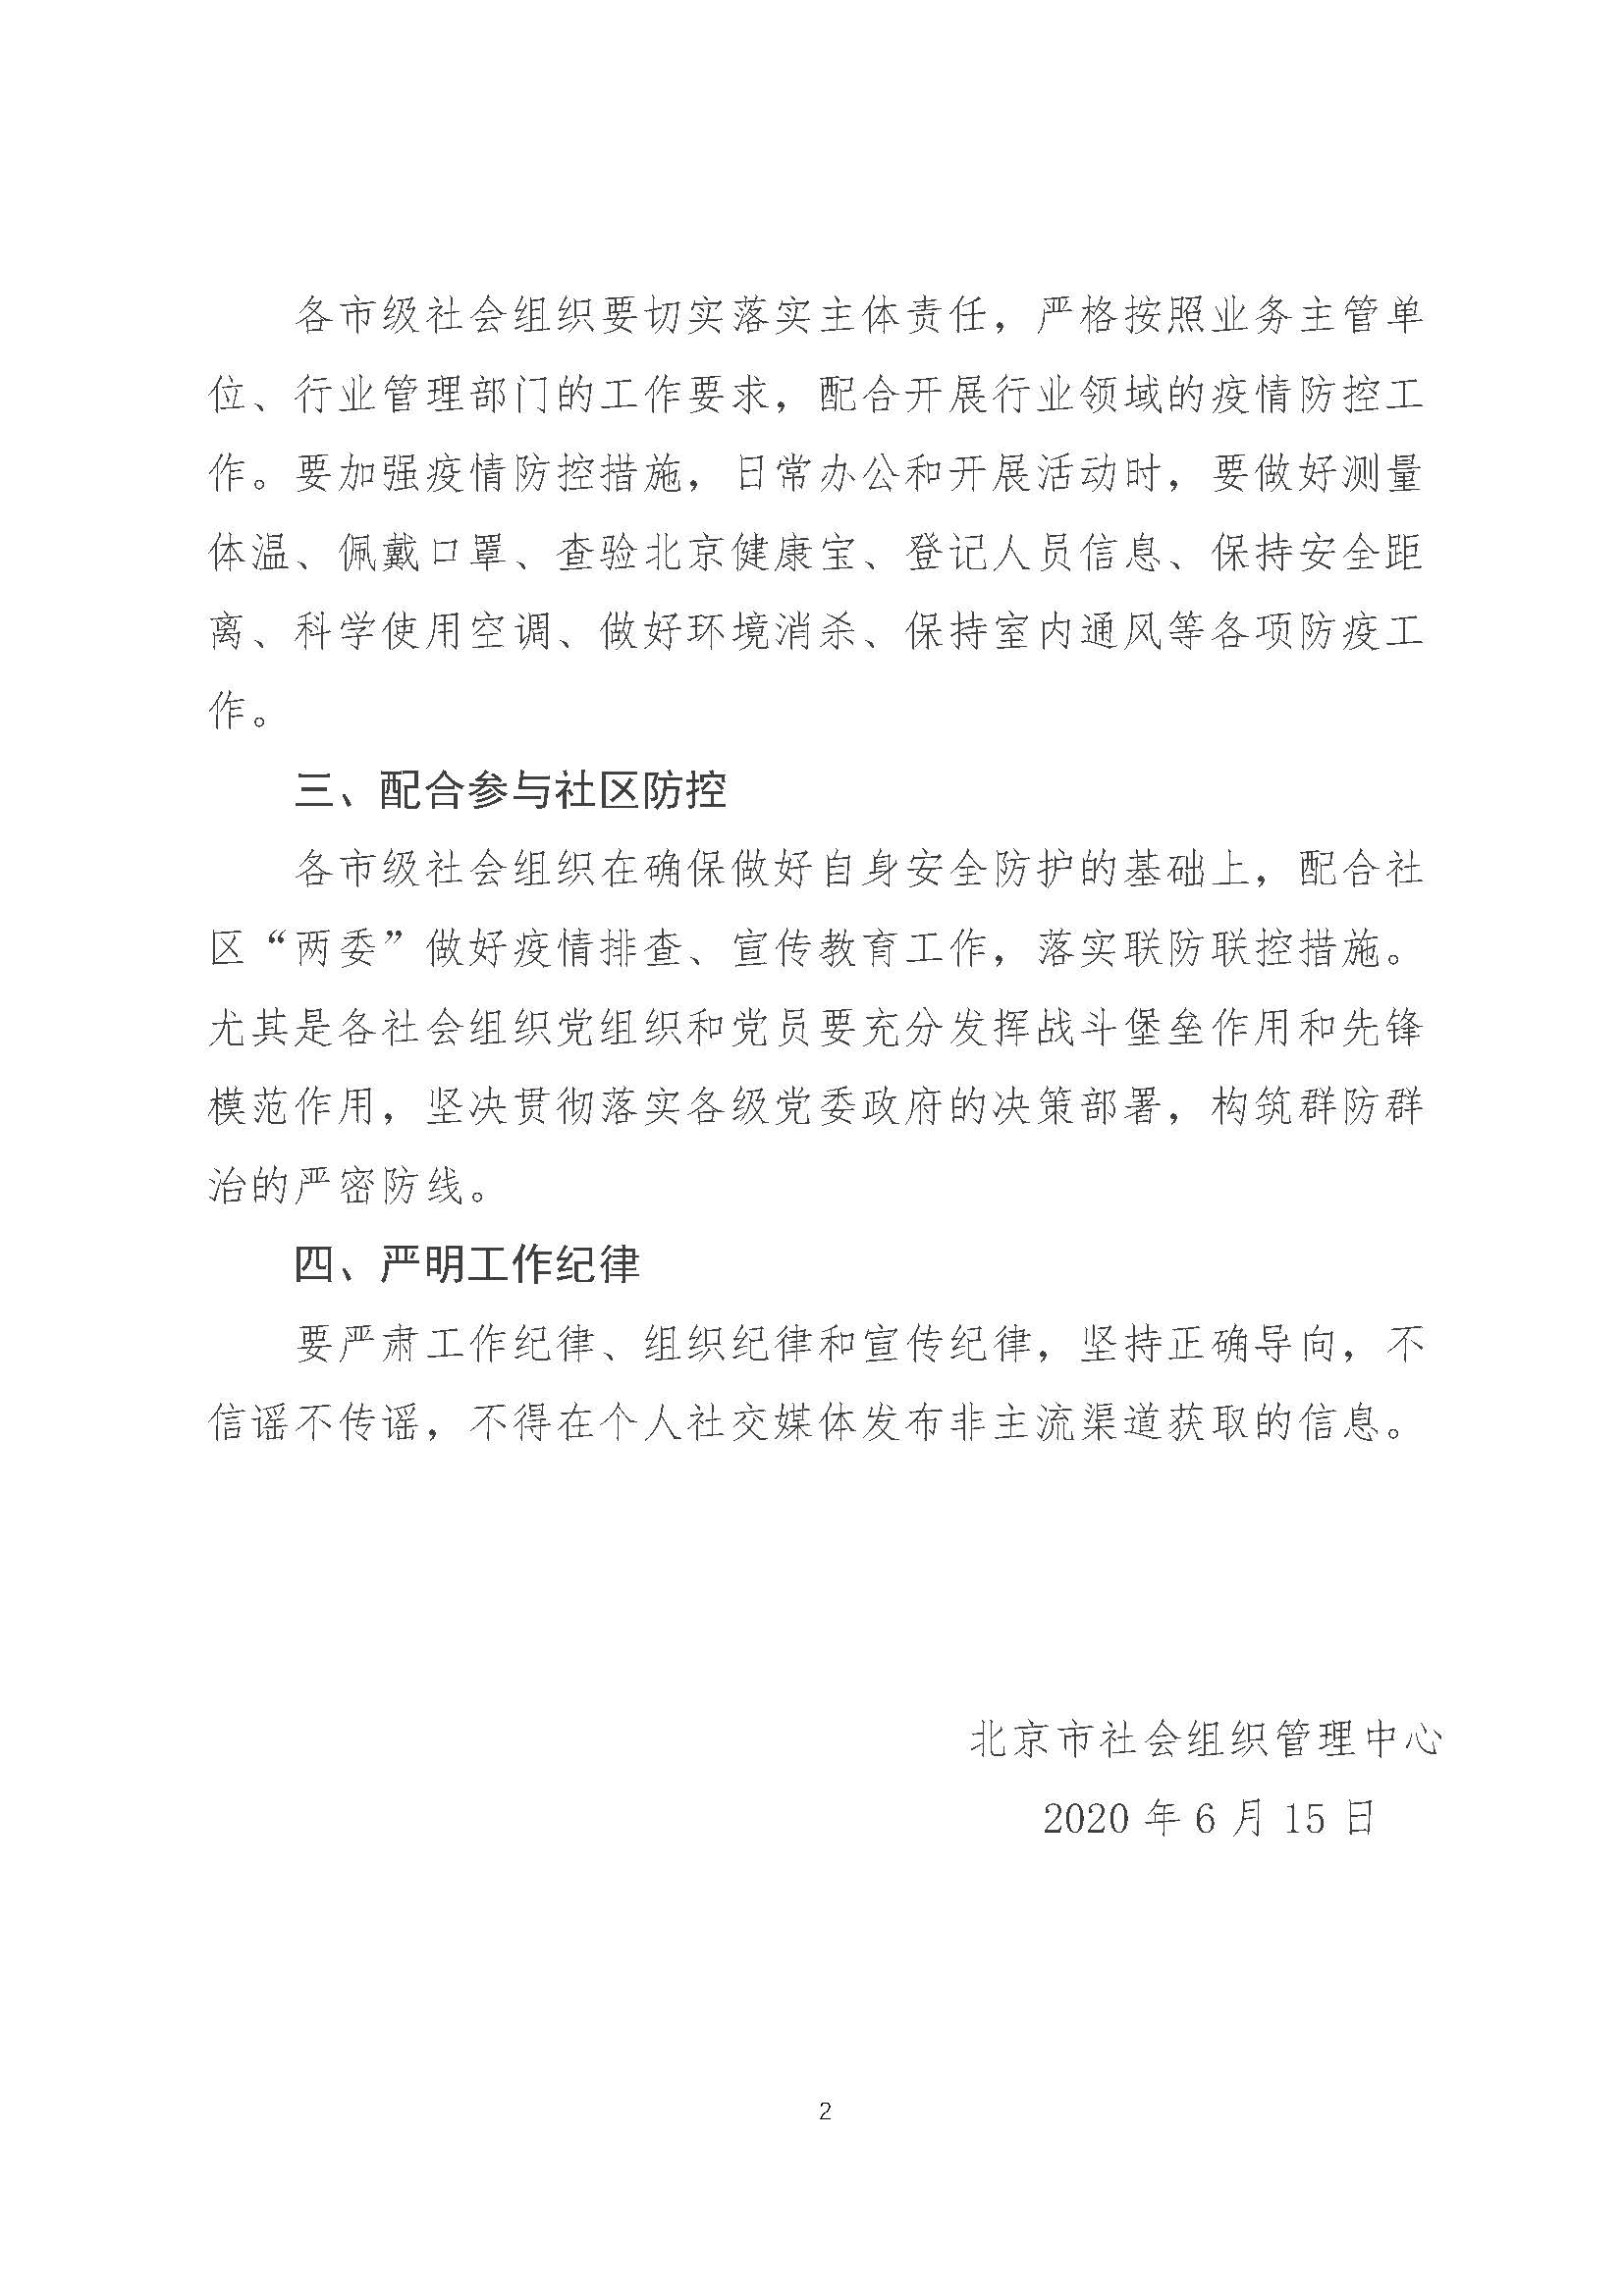 北京市社会组织管理中心关于做好疫情防控工作的通知20200615(1)_页面_2.jpg